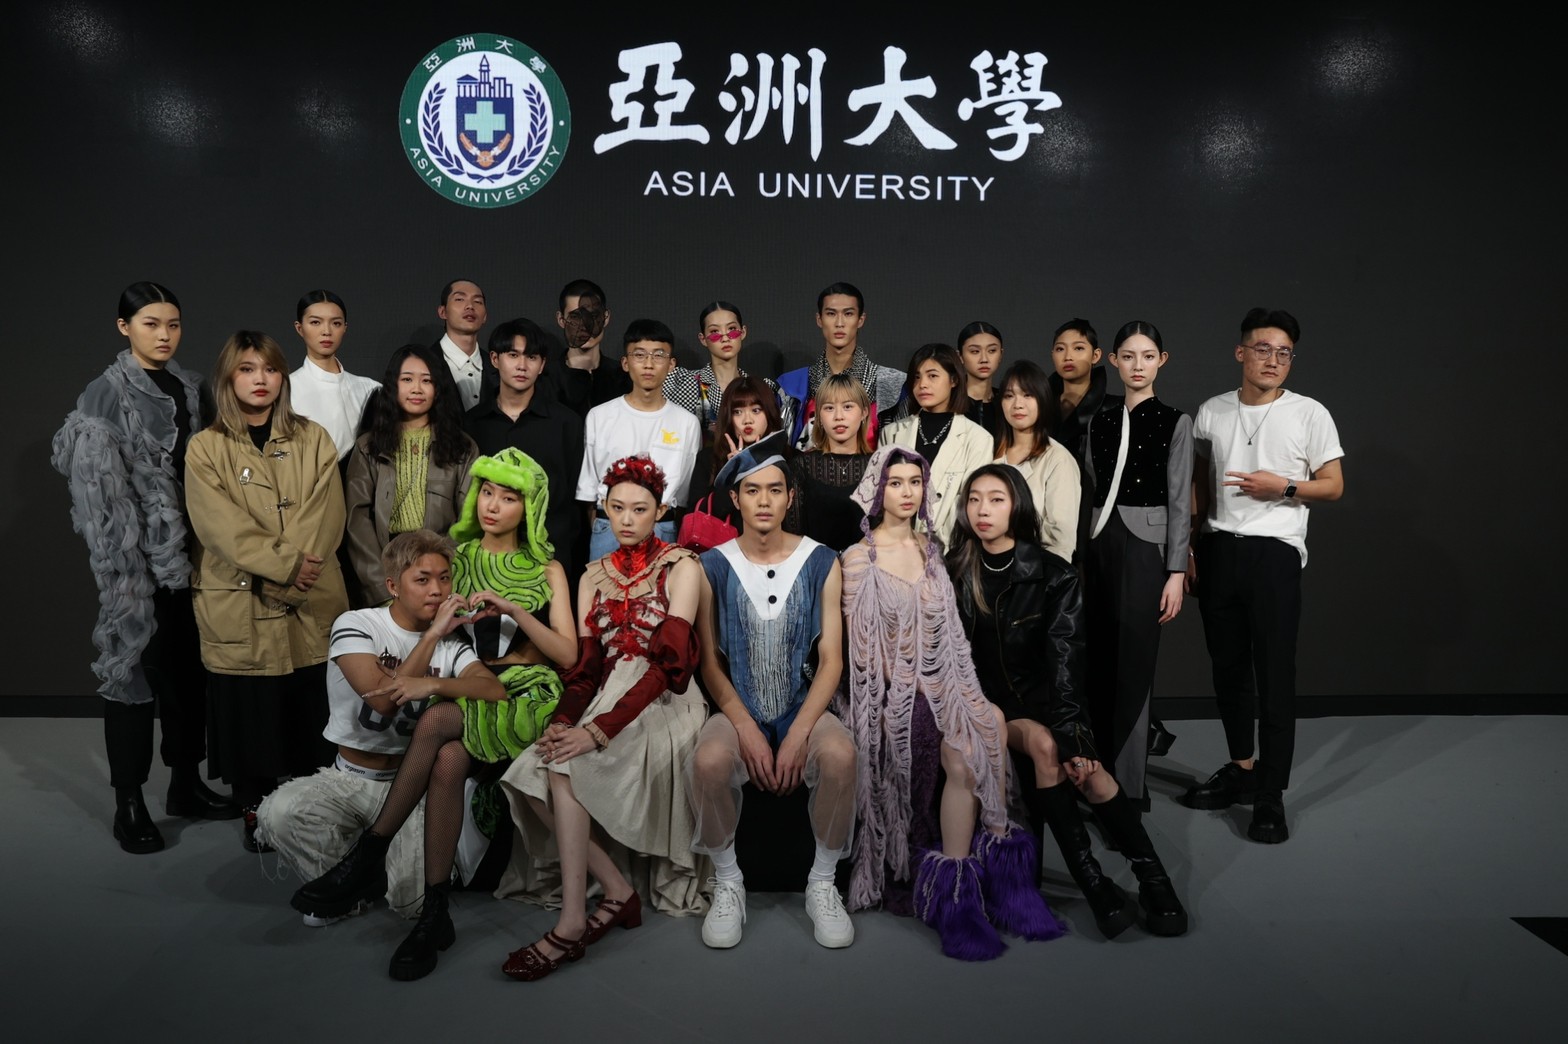 圖為亞大時尚系11位同學作品入選「台北時裝週AW23」校際展演。(台北時裝週提供)